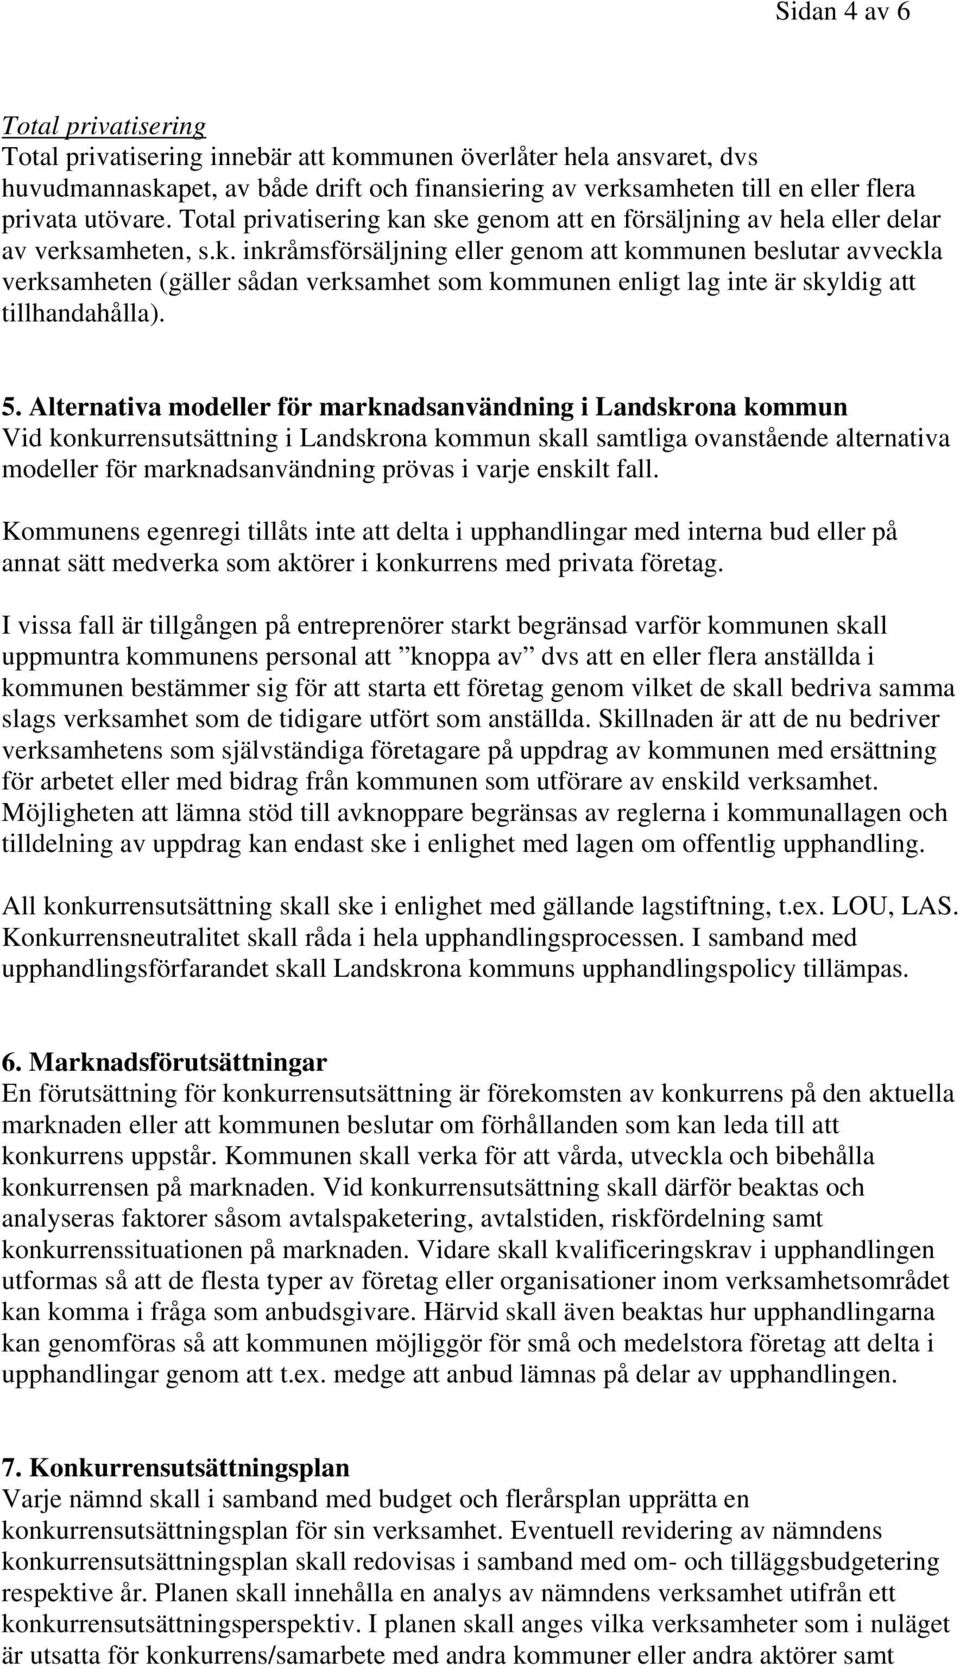 5. Alternativa modeller för marknadsanvändning i Landskrona kommun Vid konkurrensutsättning i Landskrona kommun skall samtliga ovanstående alternativa modeller för marknadsanvändning prövas i varje